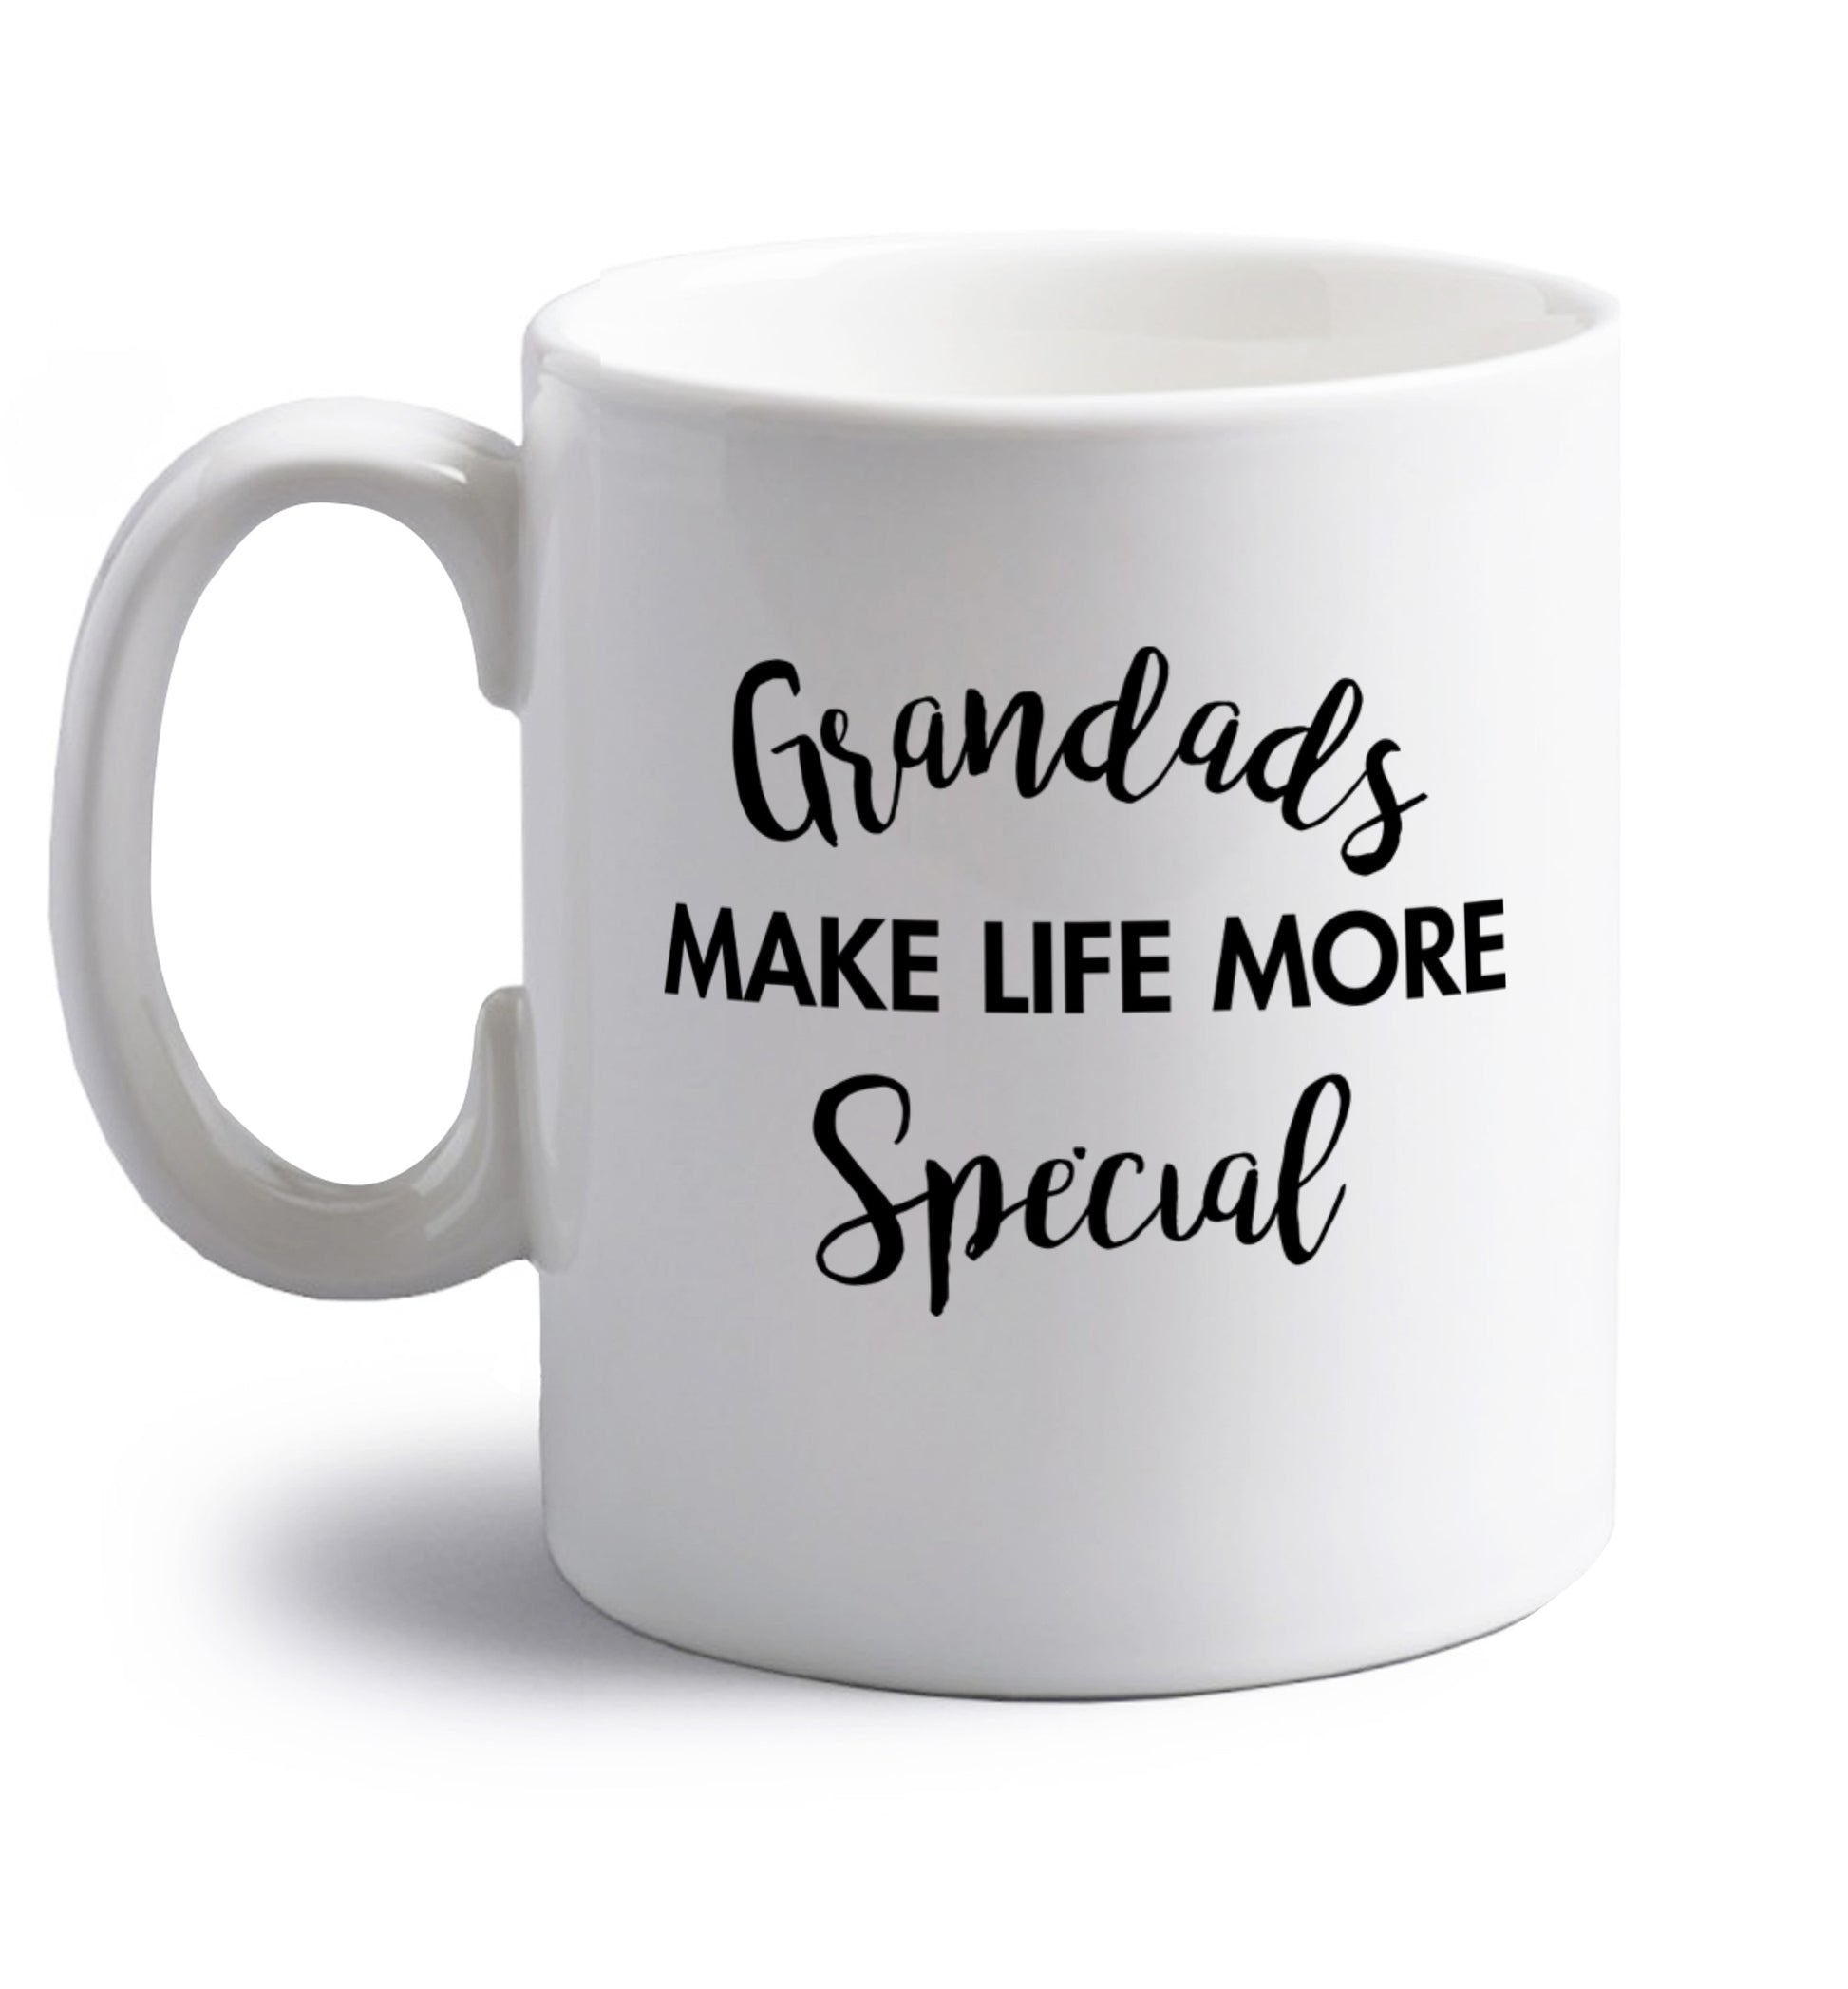 Grandads make life more special right handed white ceramic mug 